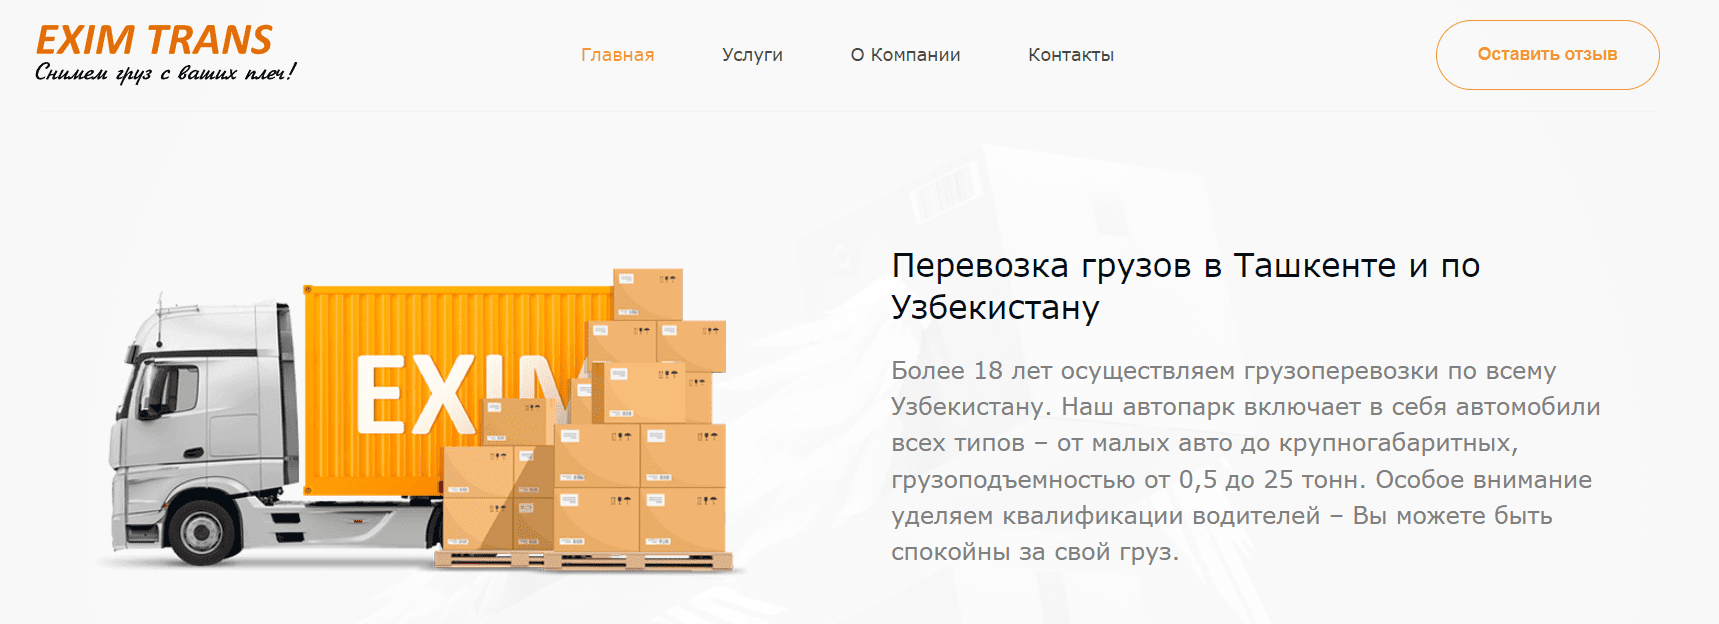 EXIM TRANS (eximtrans.uz) - официальный сайт